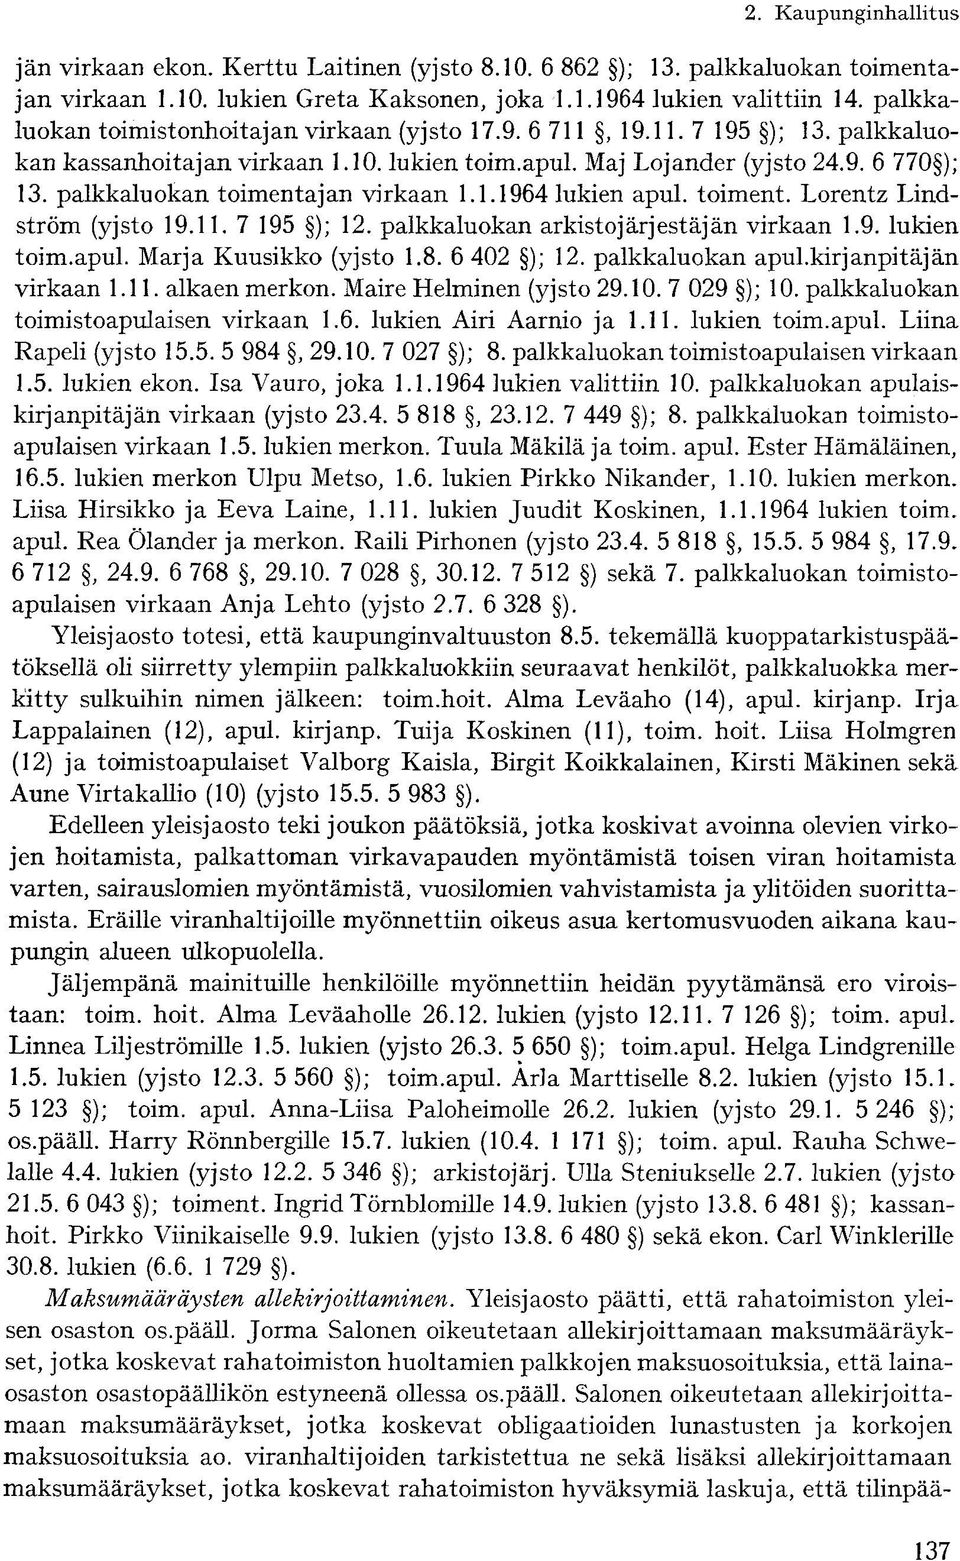 palkkaluokan toimentajan virkaan 1.1.1964 lukien apul. toiment. Lorentz Lindström (yjsto 19.11. 7 195 ); 12. palkkaluokan arkistojärjestäjän virkaan 1.9. lukien toim.apul. Marja Kuusikko (yjsto 1.8.